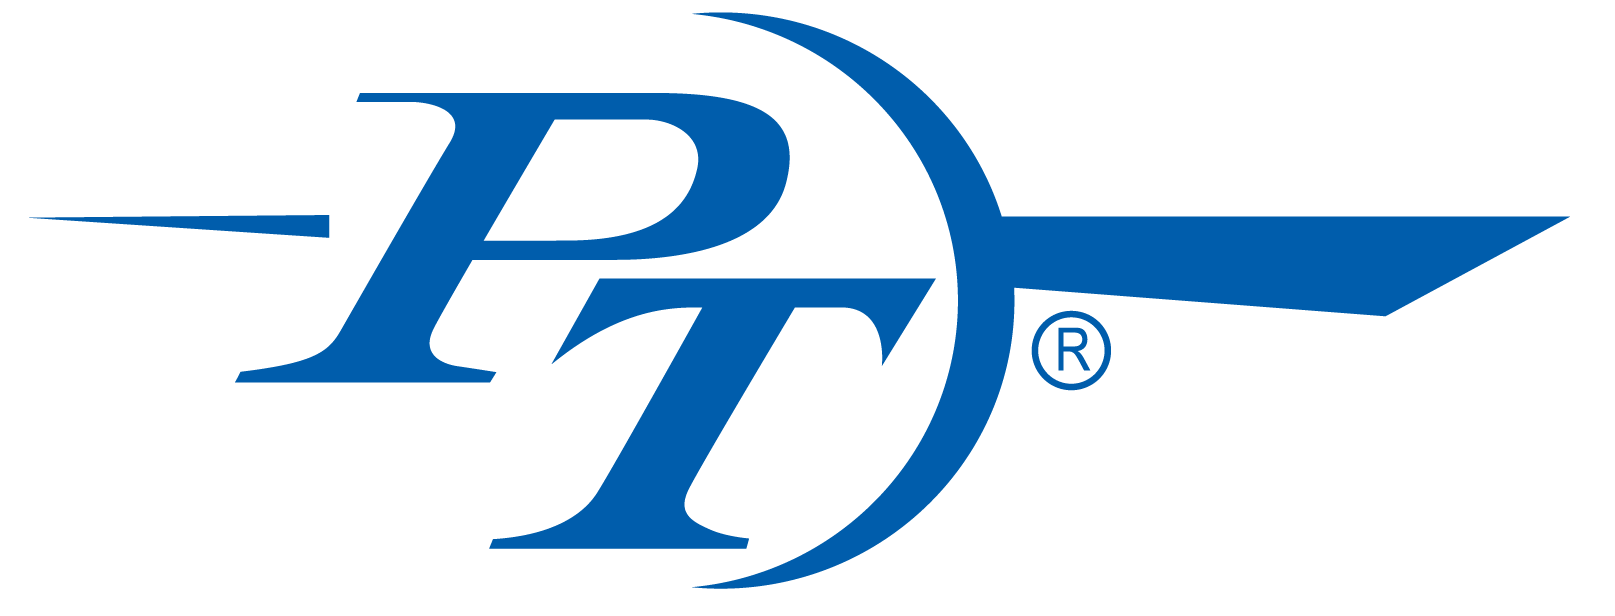 PT Coupling-Logo-Blue-2019-Cutout1.png